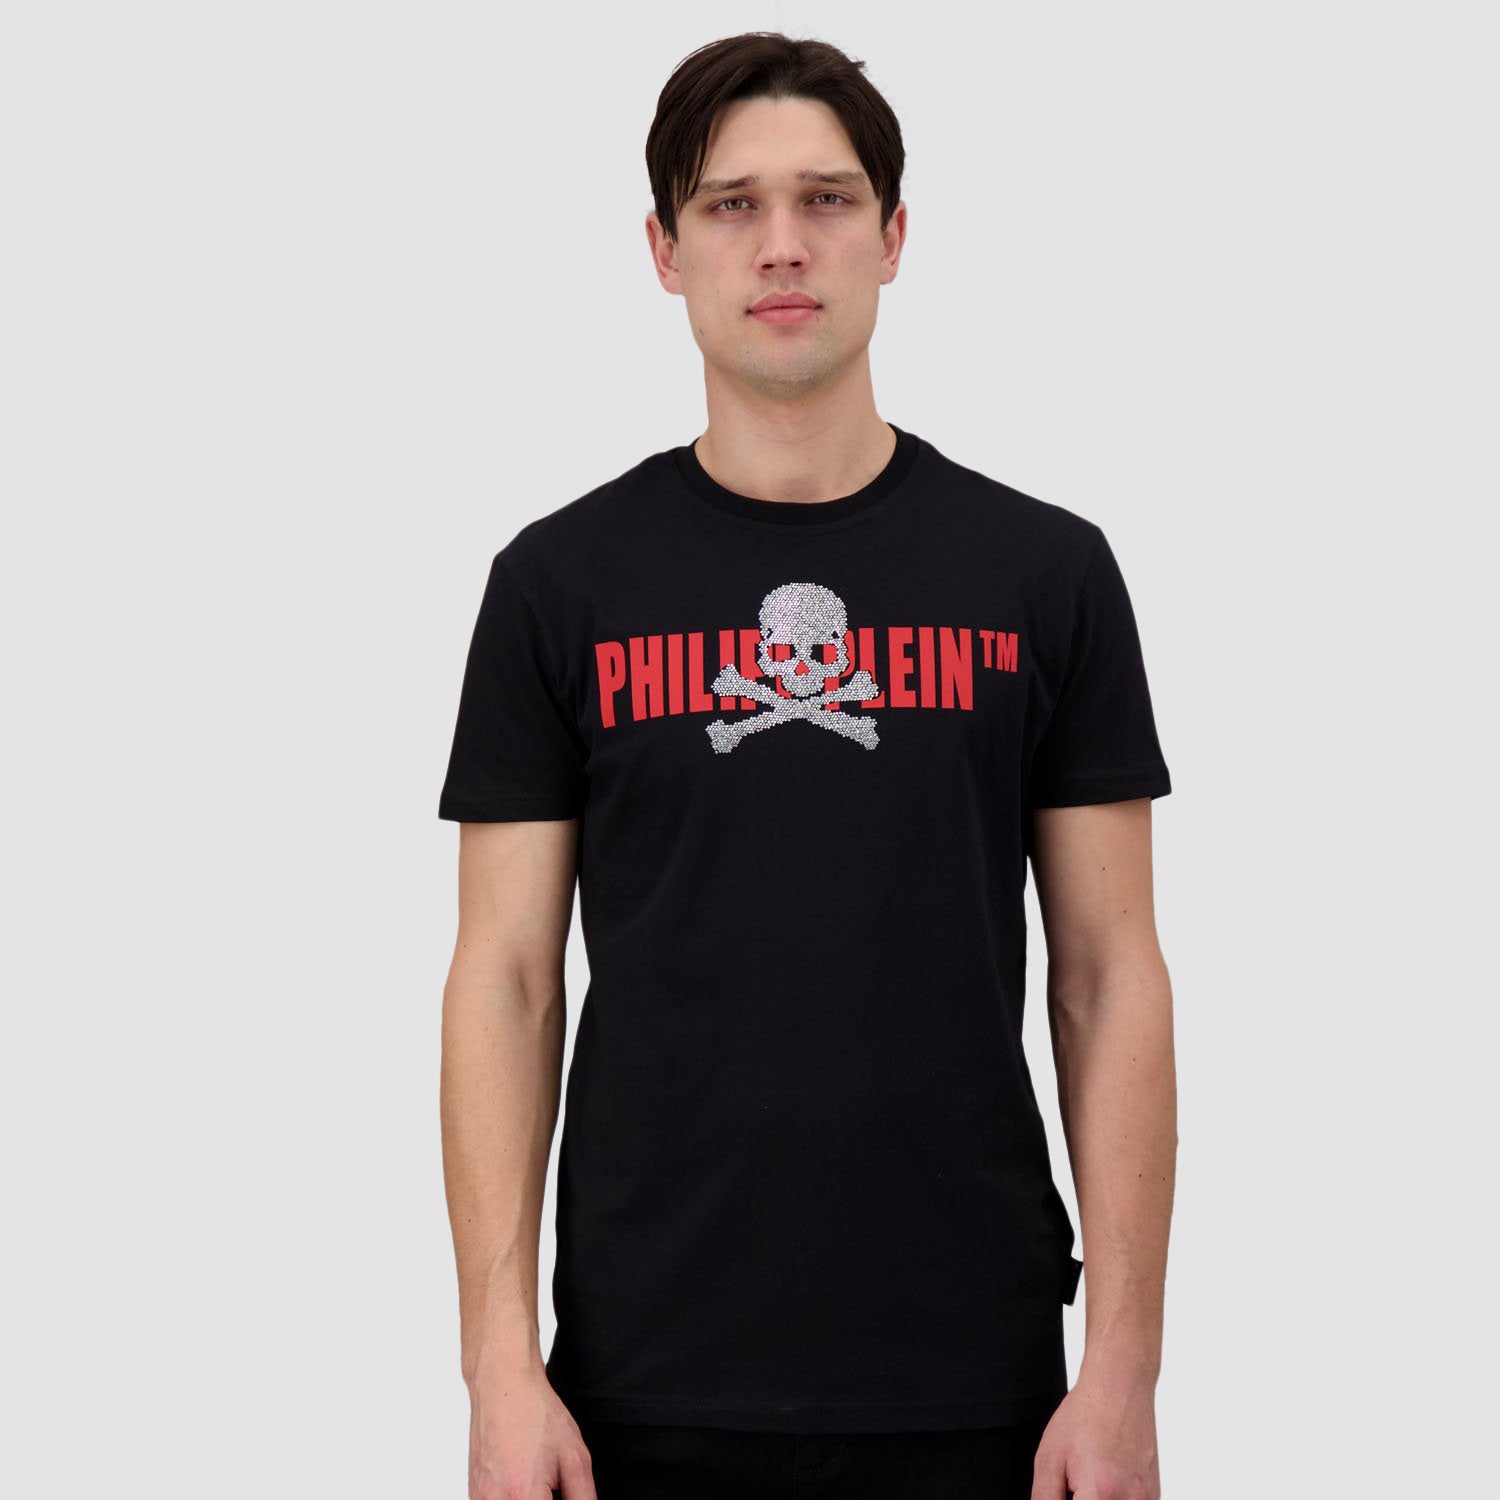 Philipp Plein Black/Red Round Neck SS Skull Strass T-Shirt